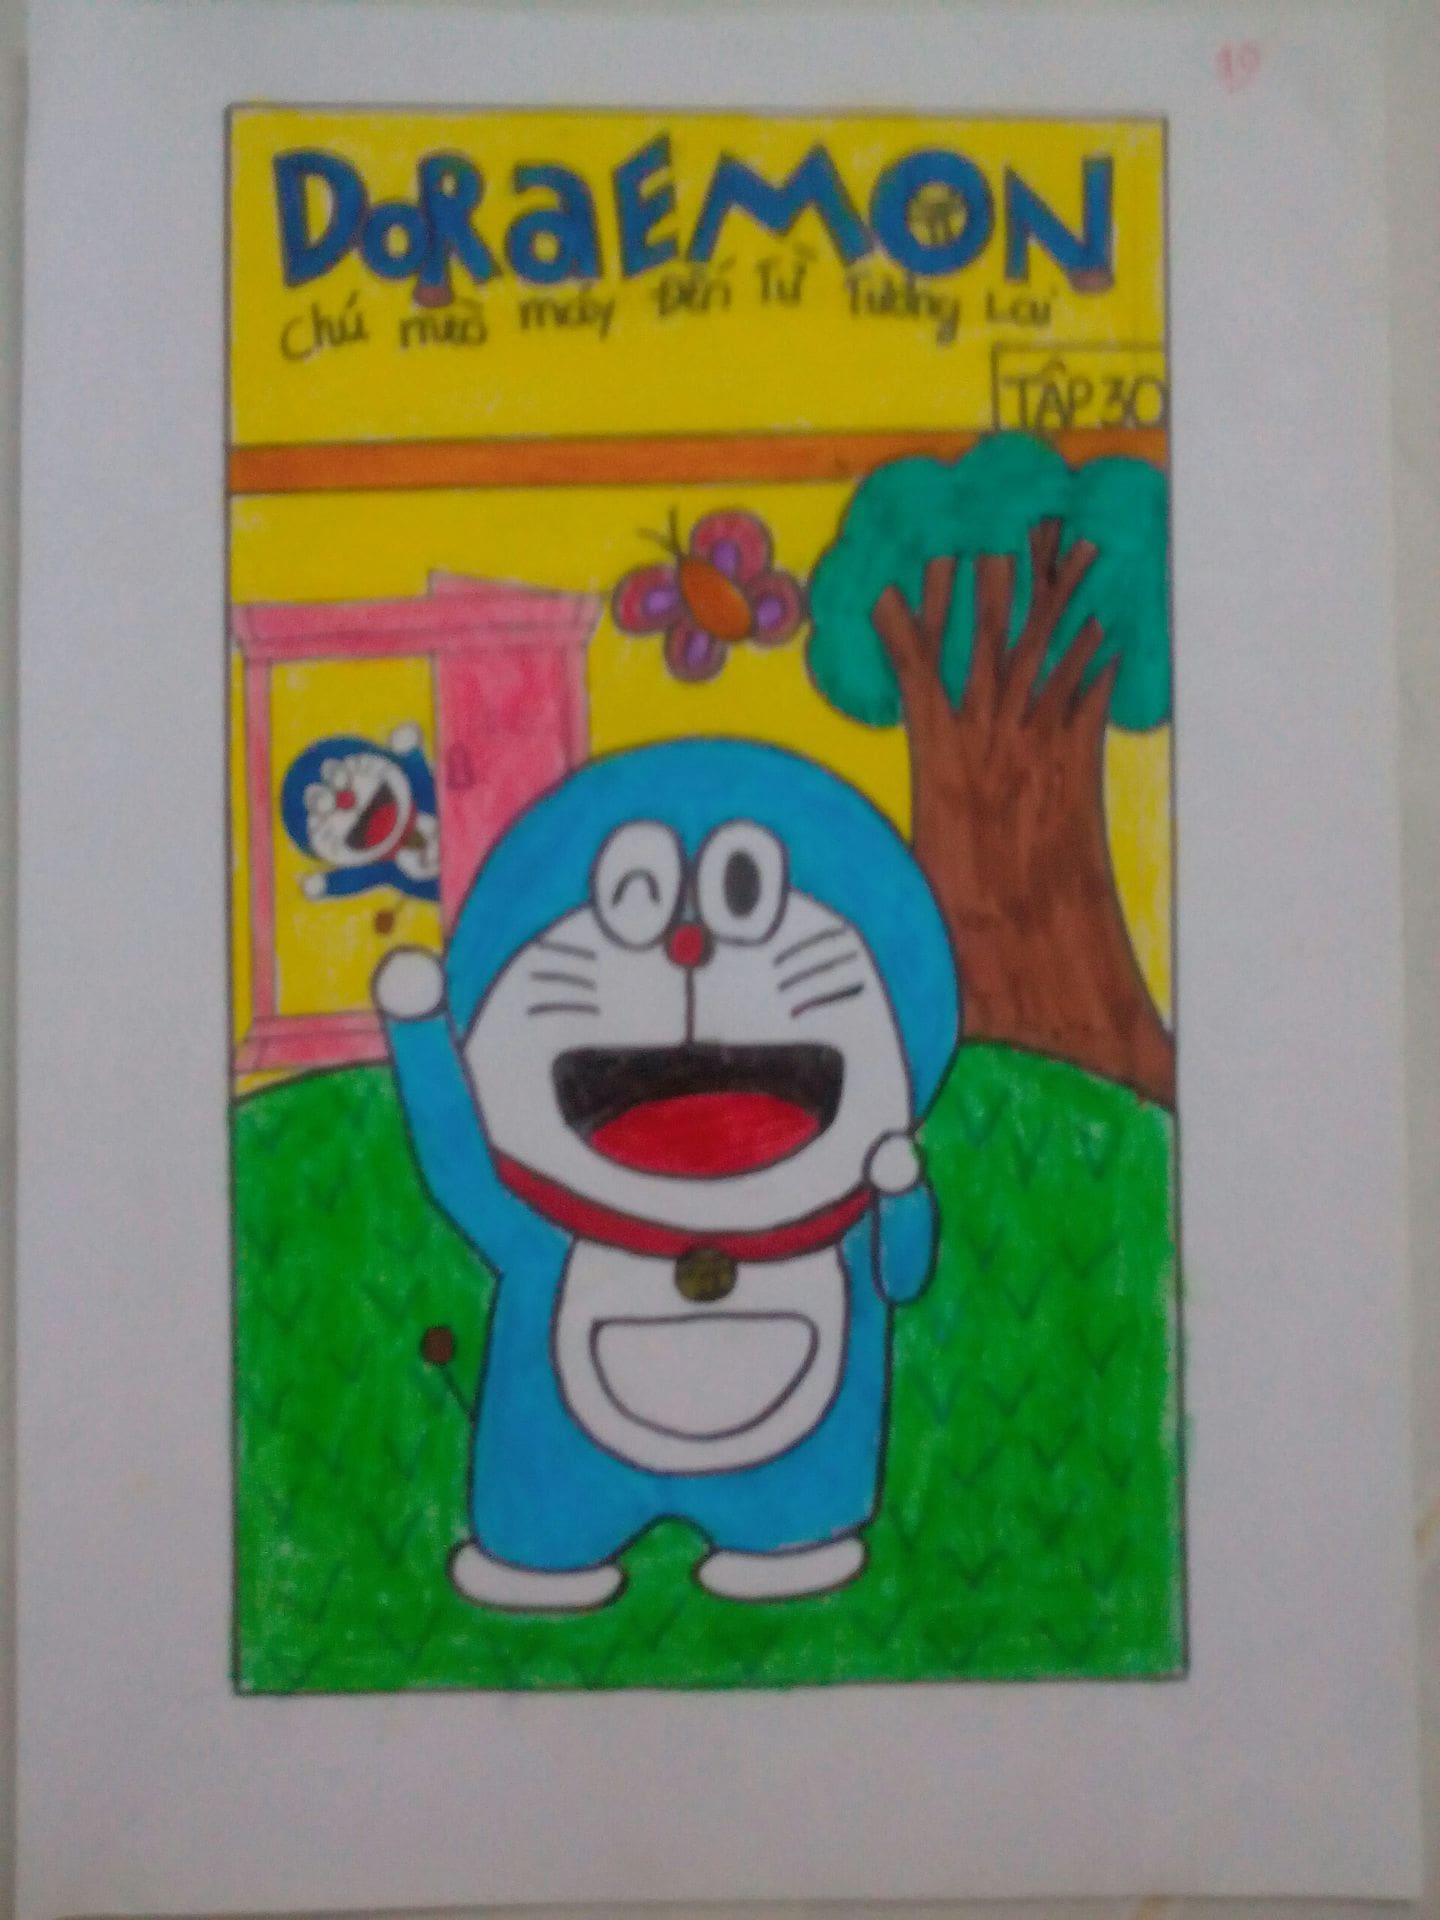 Bạn là fan của Doraemon và muốn tạo ra một bộ truyện tranh của riêng mình? Bạn không thể bỏ qua những tác phẩm nghệ thuật được vẽ bởi các nghệ sĩ tài năng. Từ việc thể hiện những chi tiết tinh xảo đến việc sáng tạo những bìa truyện đặc biệt, tất cả đều khiến bạn bị thu hút.